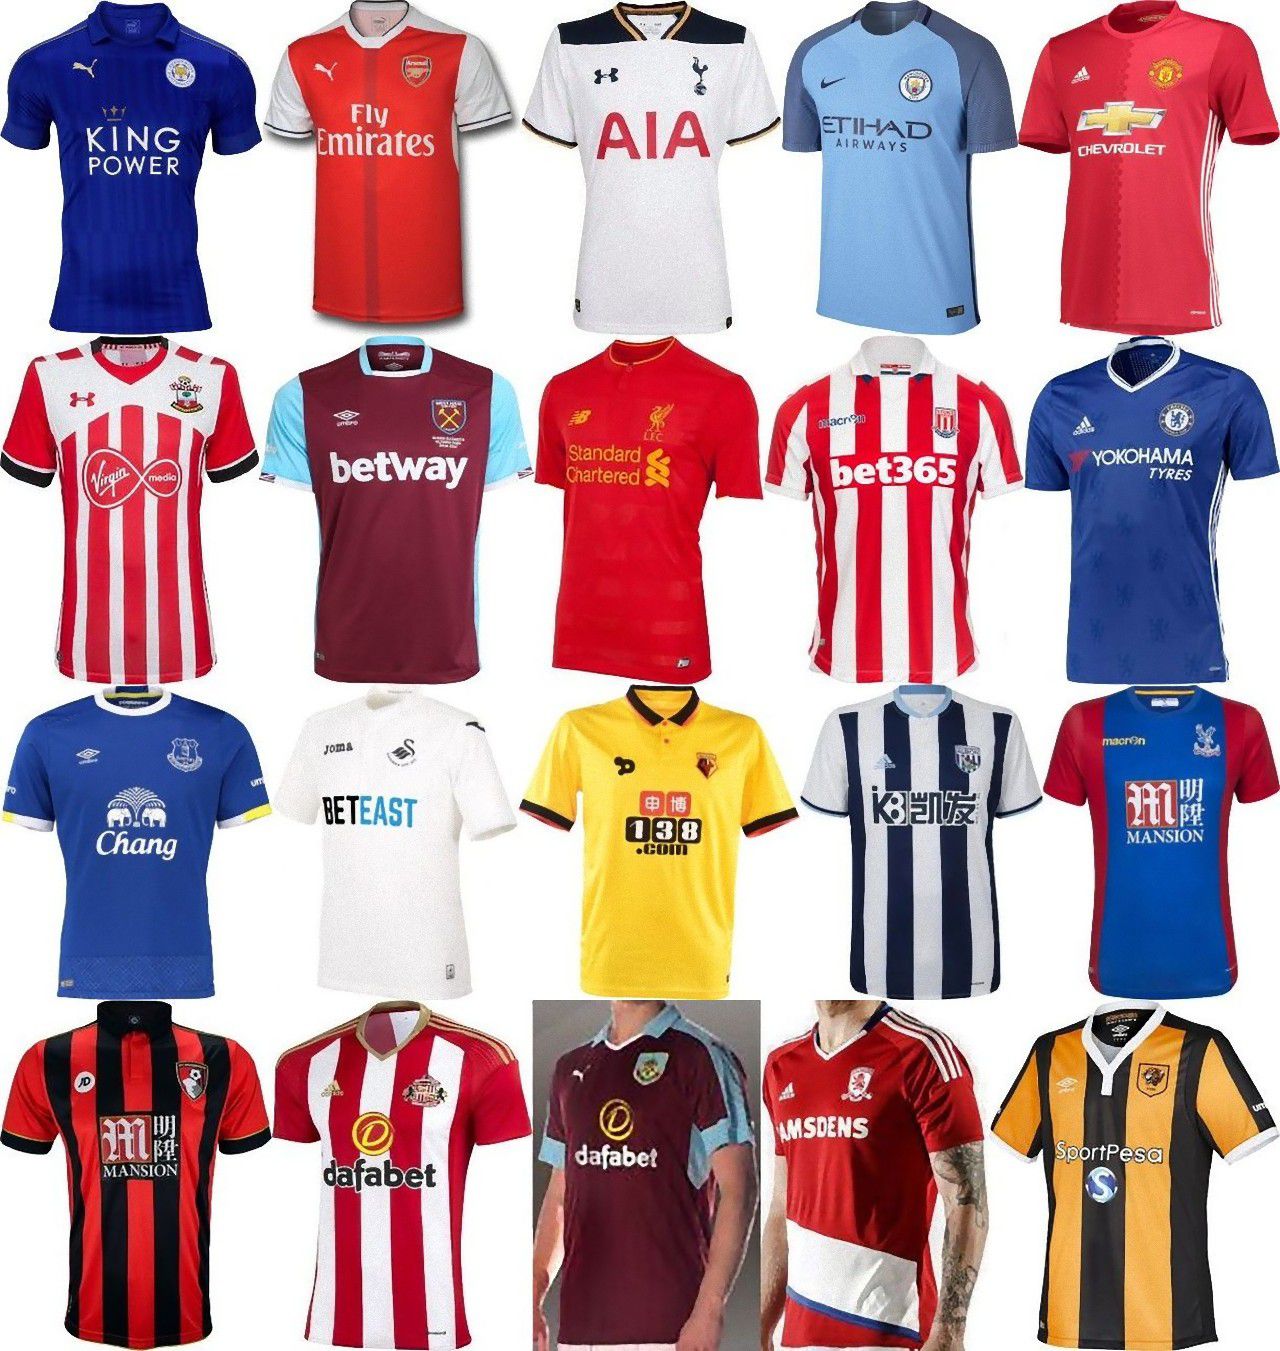 ユニ11 プレミアリーグ 16 17 全クラブのホームユニフォームが明らかに T Co 5wfowcl4cc Kit Shirt Epl Premier League 16 17 Home Jerseys T Co B2yietnthl Twitter